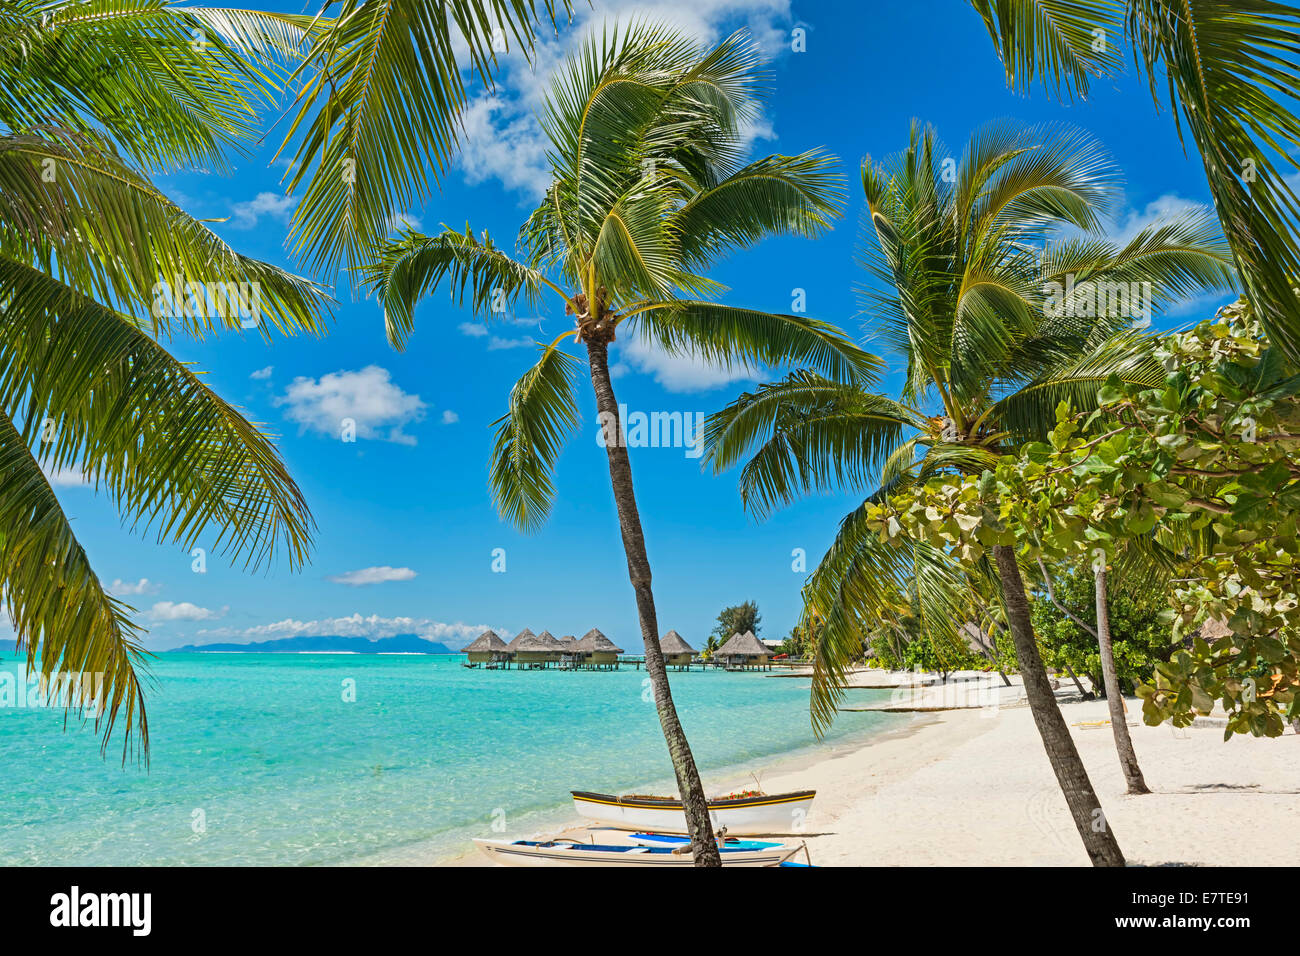 Beach of Matira, Bora Bora, French Polynesia Stock Photo